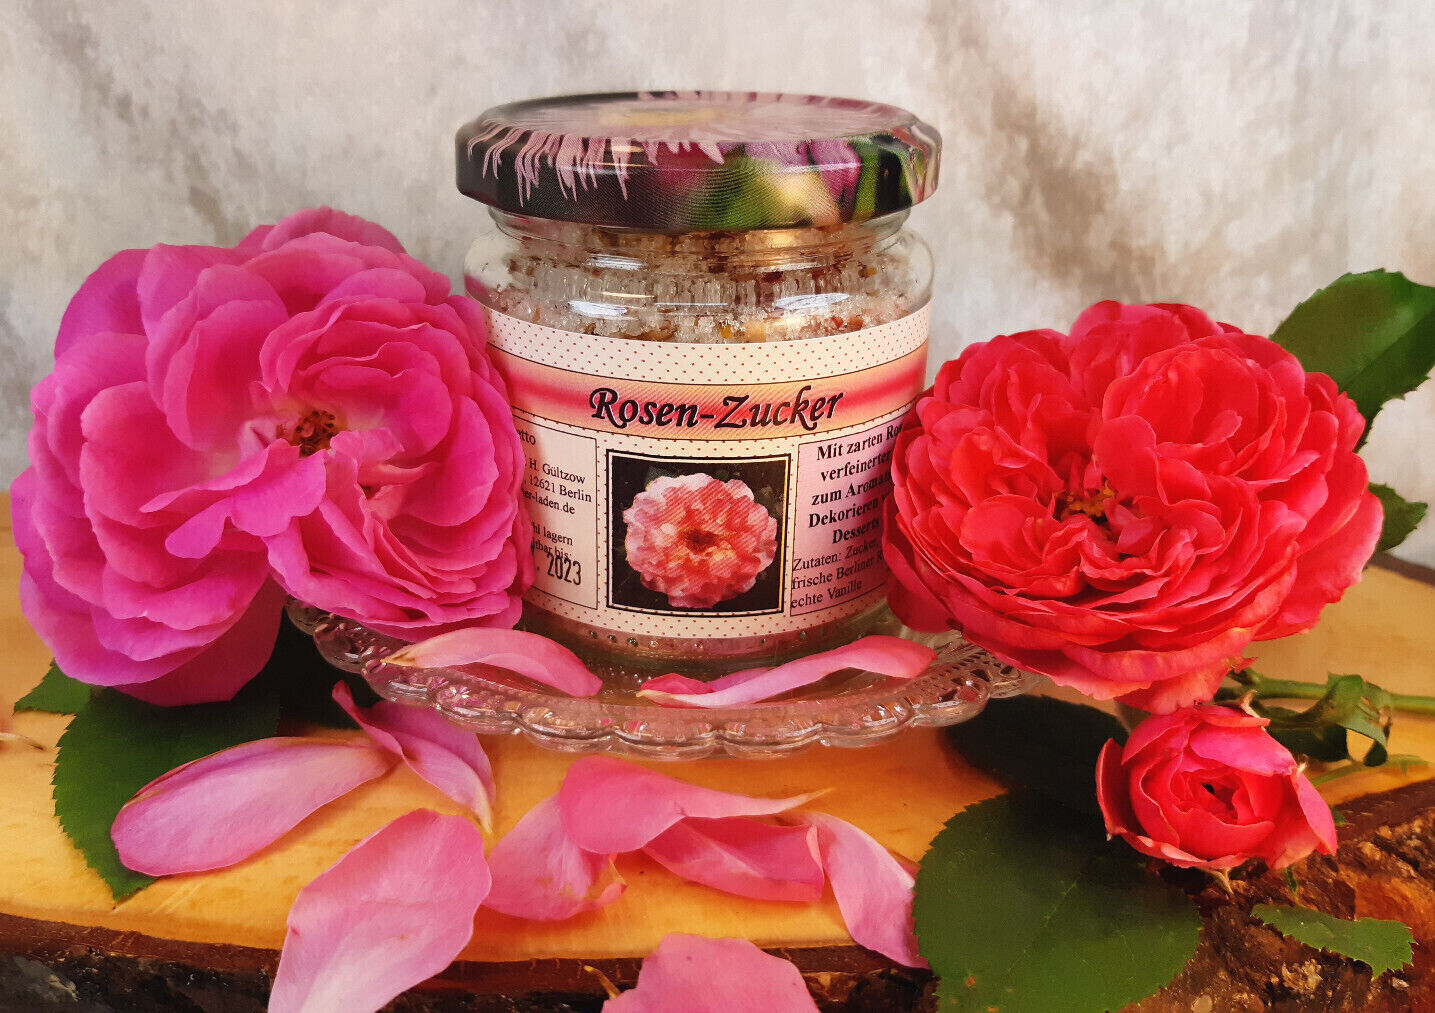 Zucker mit Berliner Rosenblüten, 100g, Spezialität m Duftrosenblüten